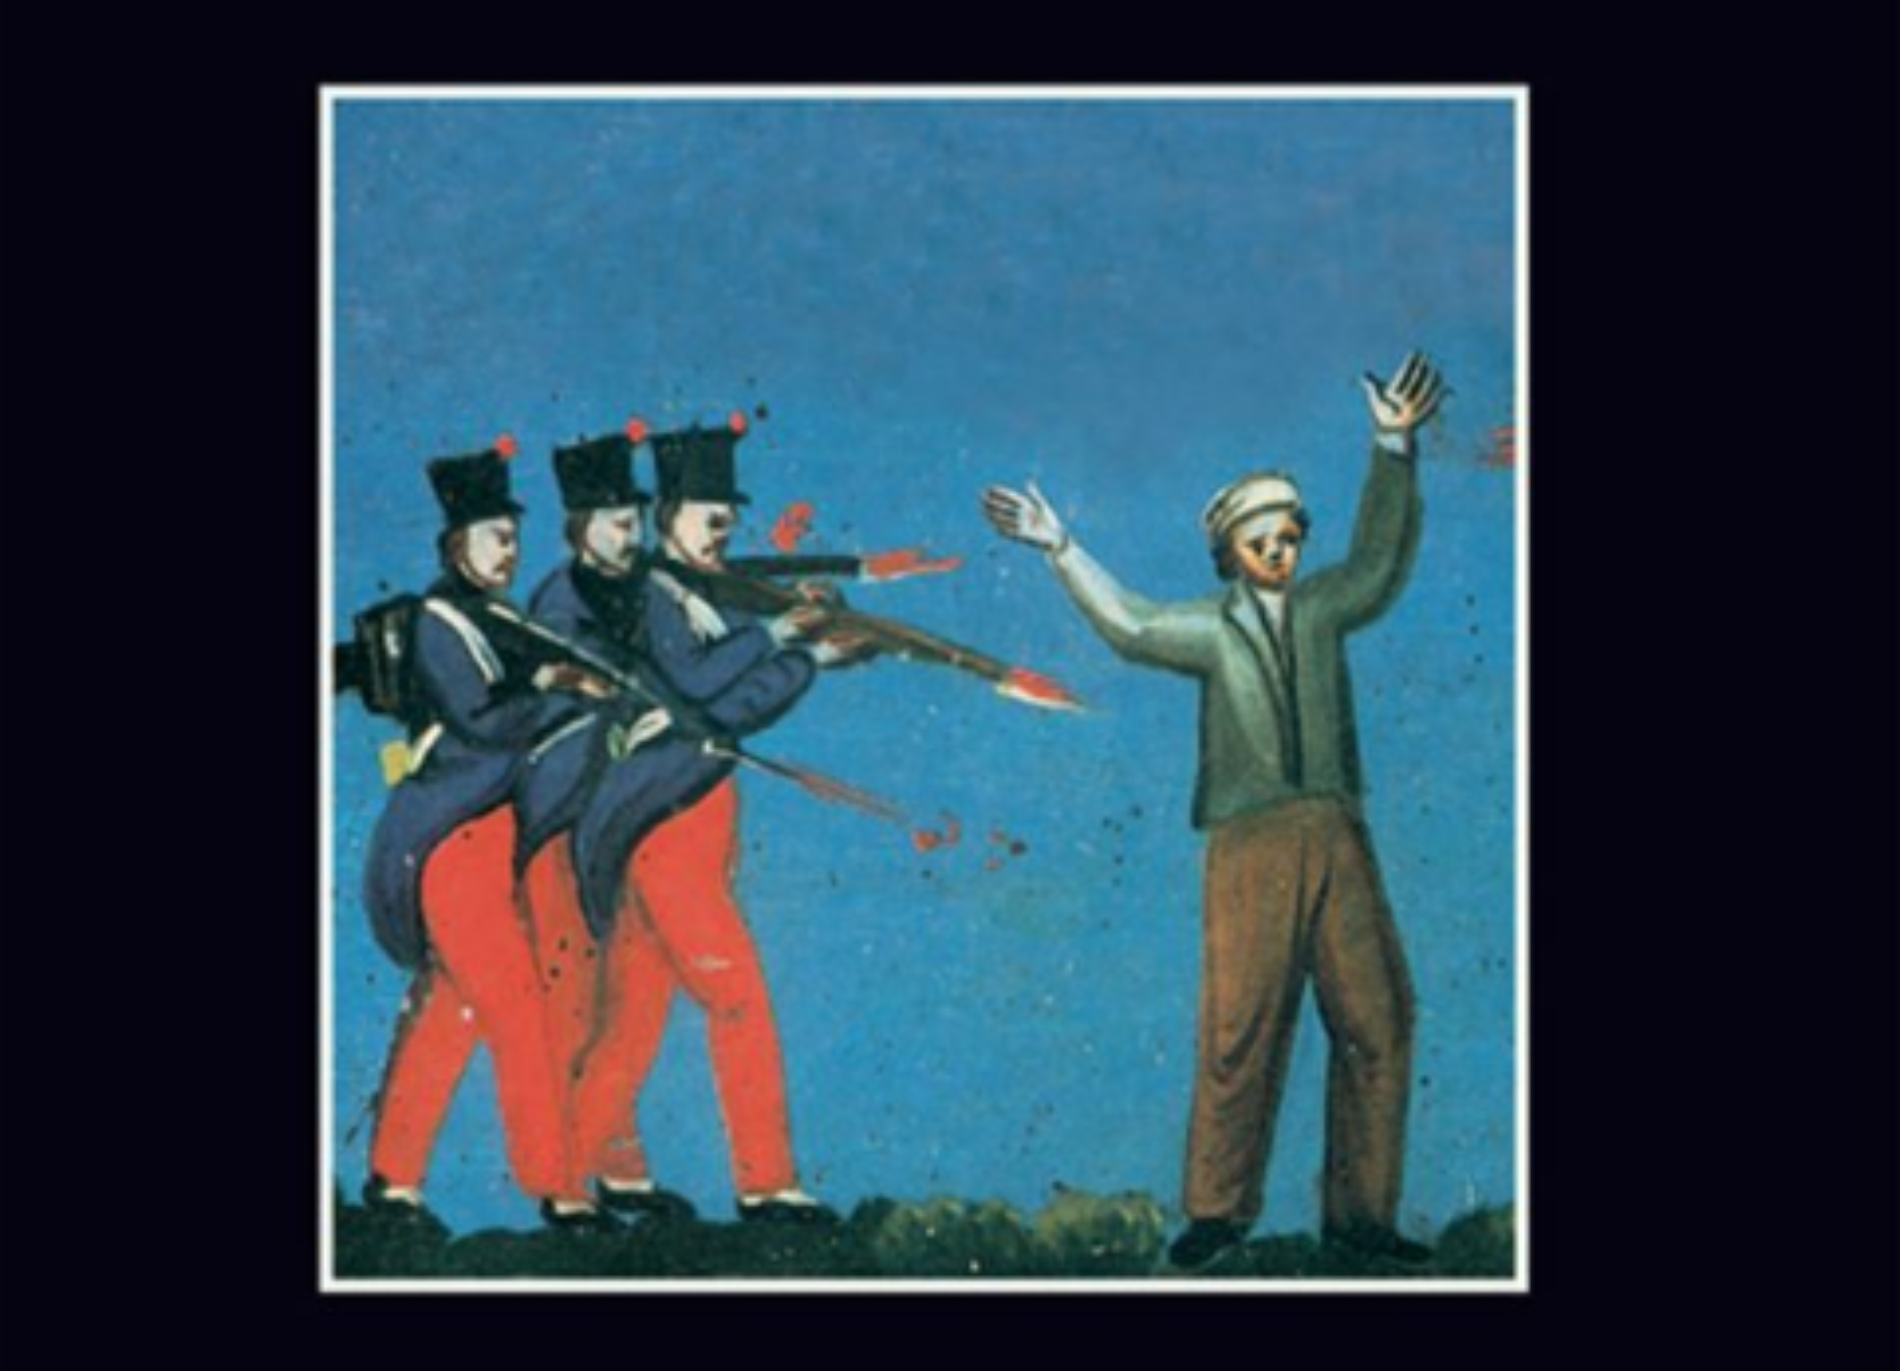 La strage del gennaio 1848 dove persero la vita anche tre uomini barresi